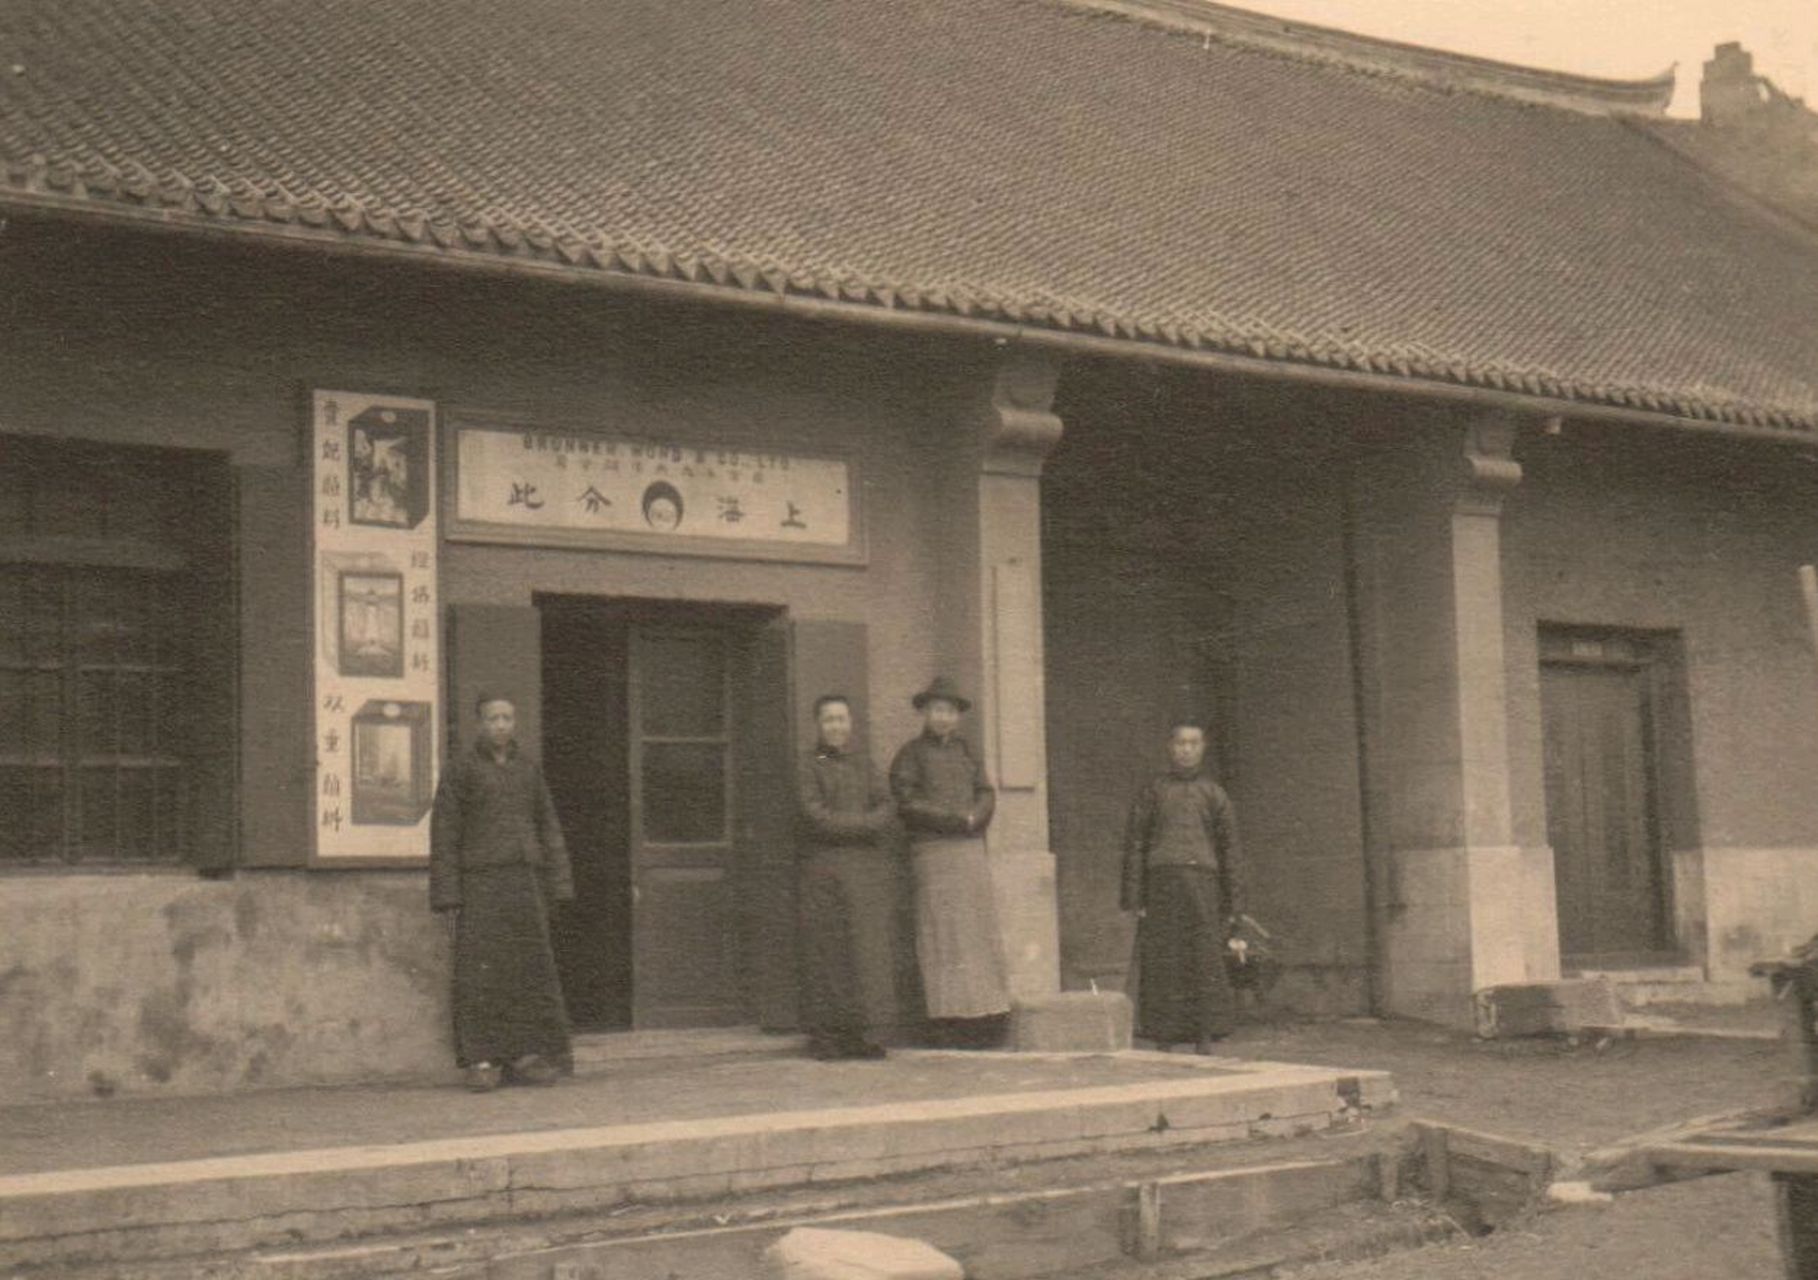 辽宁海城的老照片:这是1923年拍摄的辽宁海城牛庄的珍贵历史旧影,照片